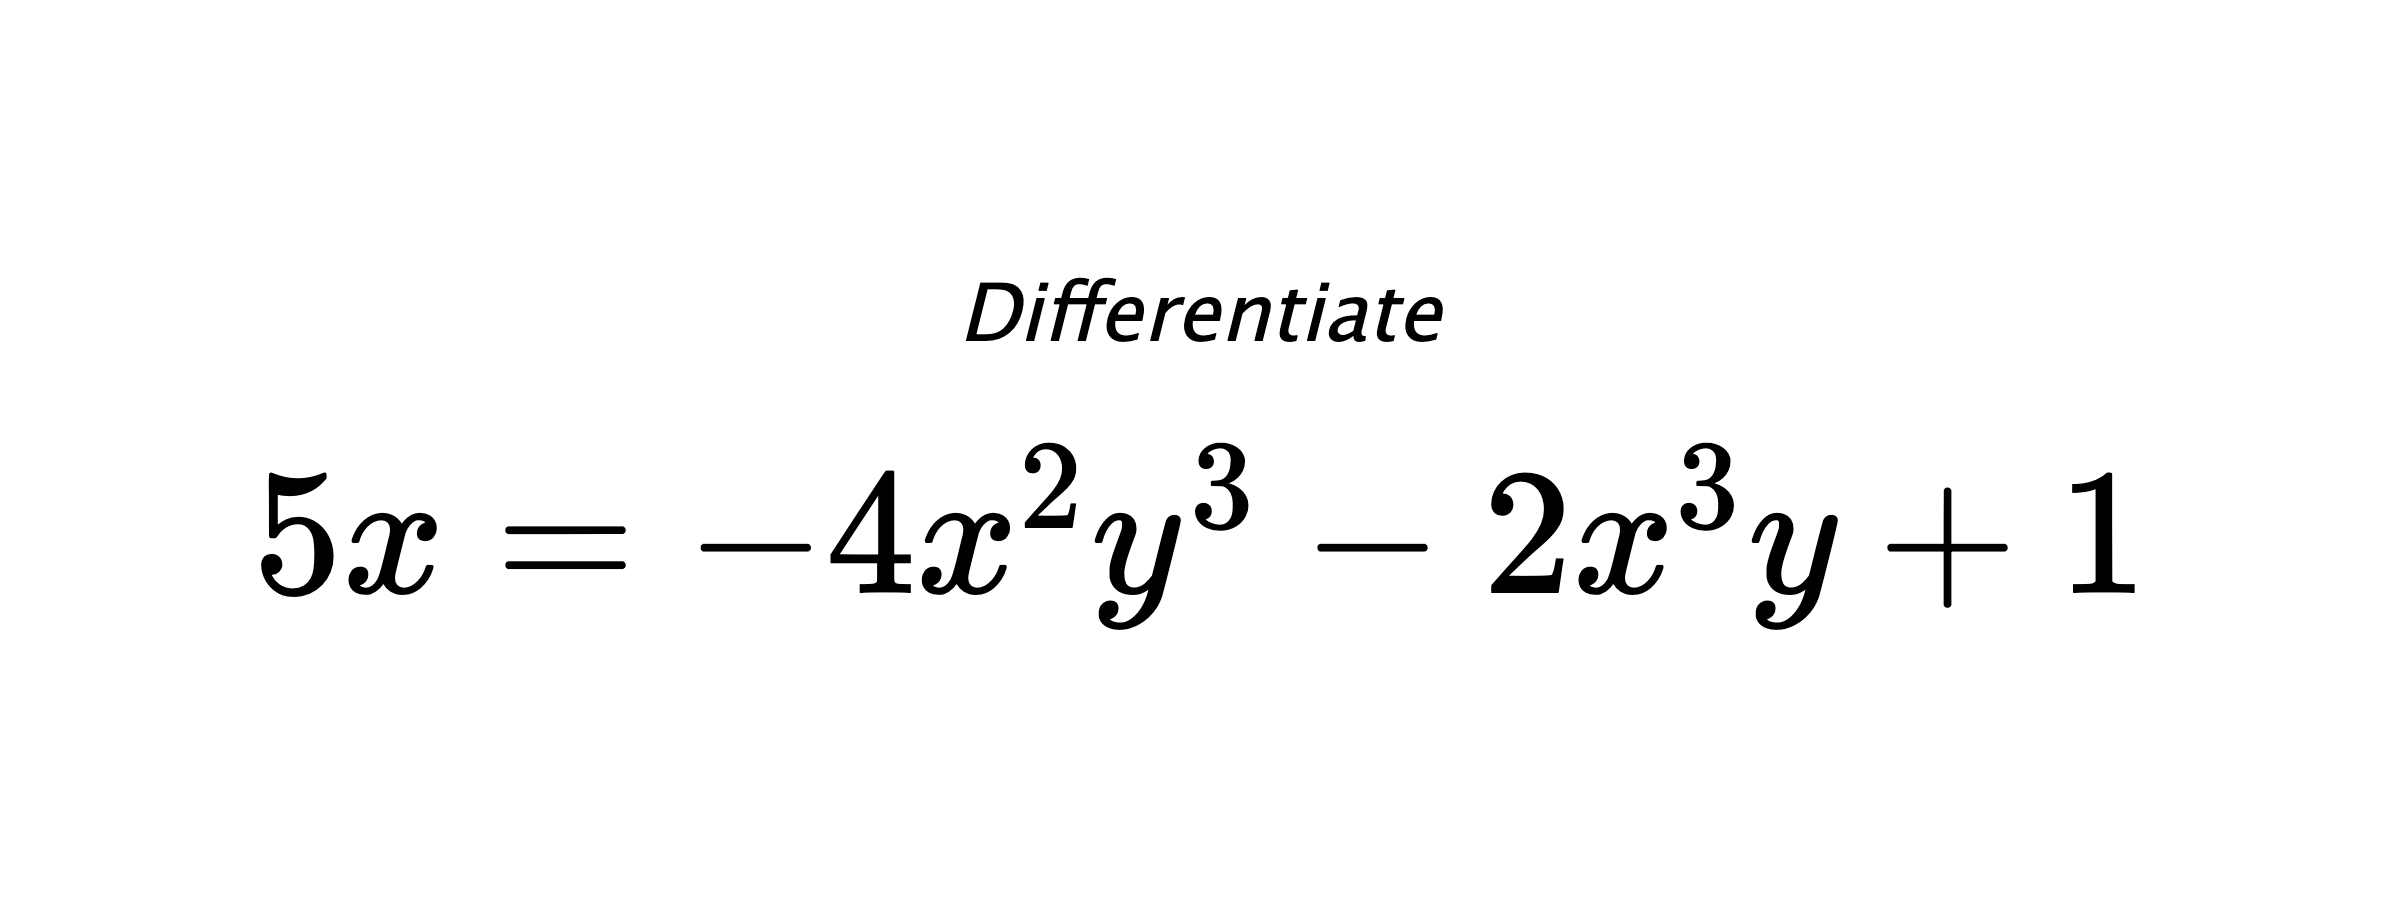 Differentiate $ 5x = -4x^2y^3-2x^3y+1 $